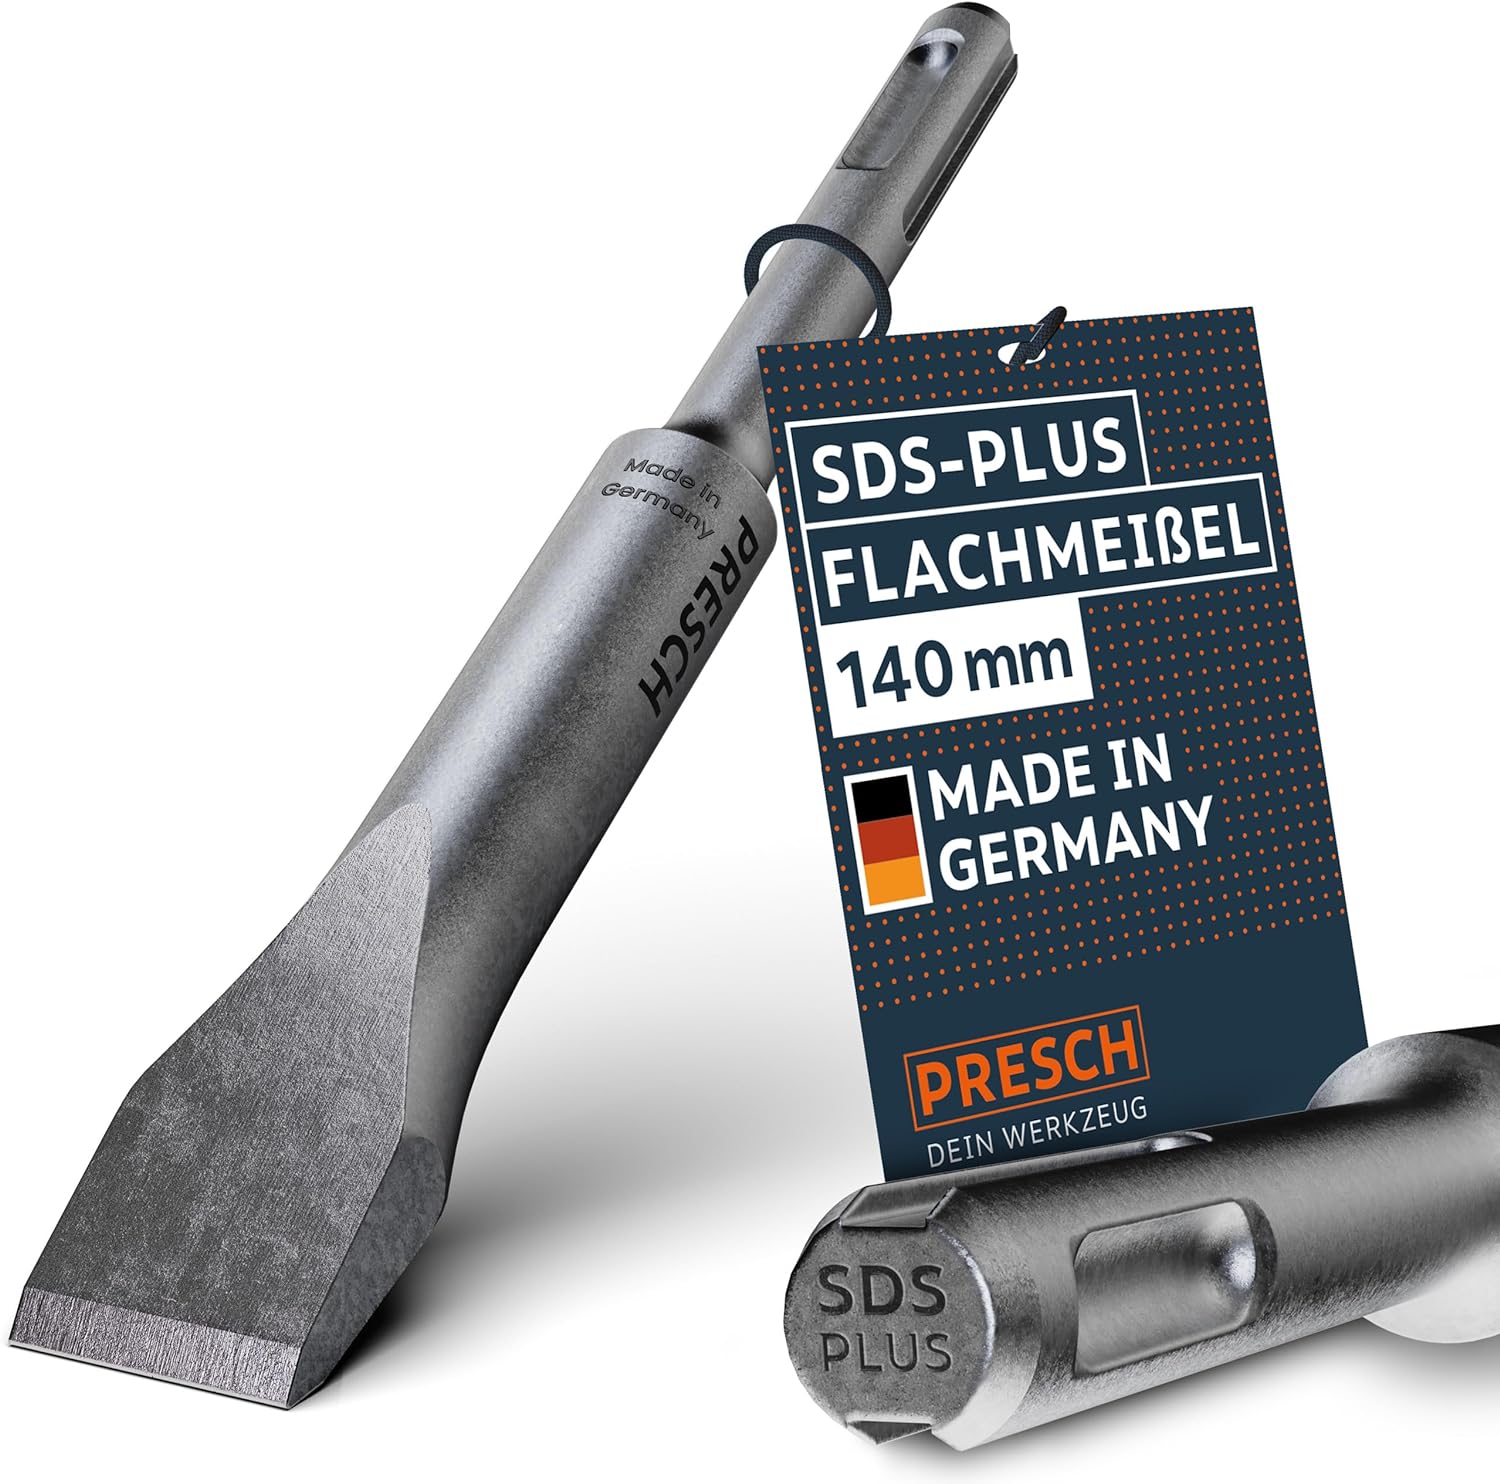 PRESCH SDS-PLUS Flachmeißel 140 mm, kurzer Meißel für Bauarbeiten und Renovierungen, Meißelwerkzeug Made in Germany